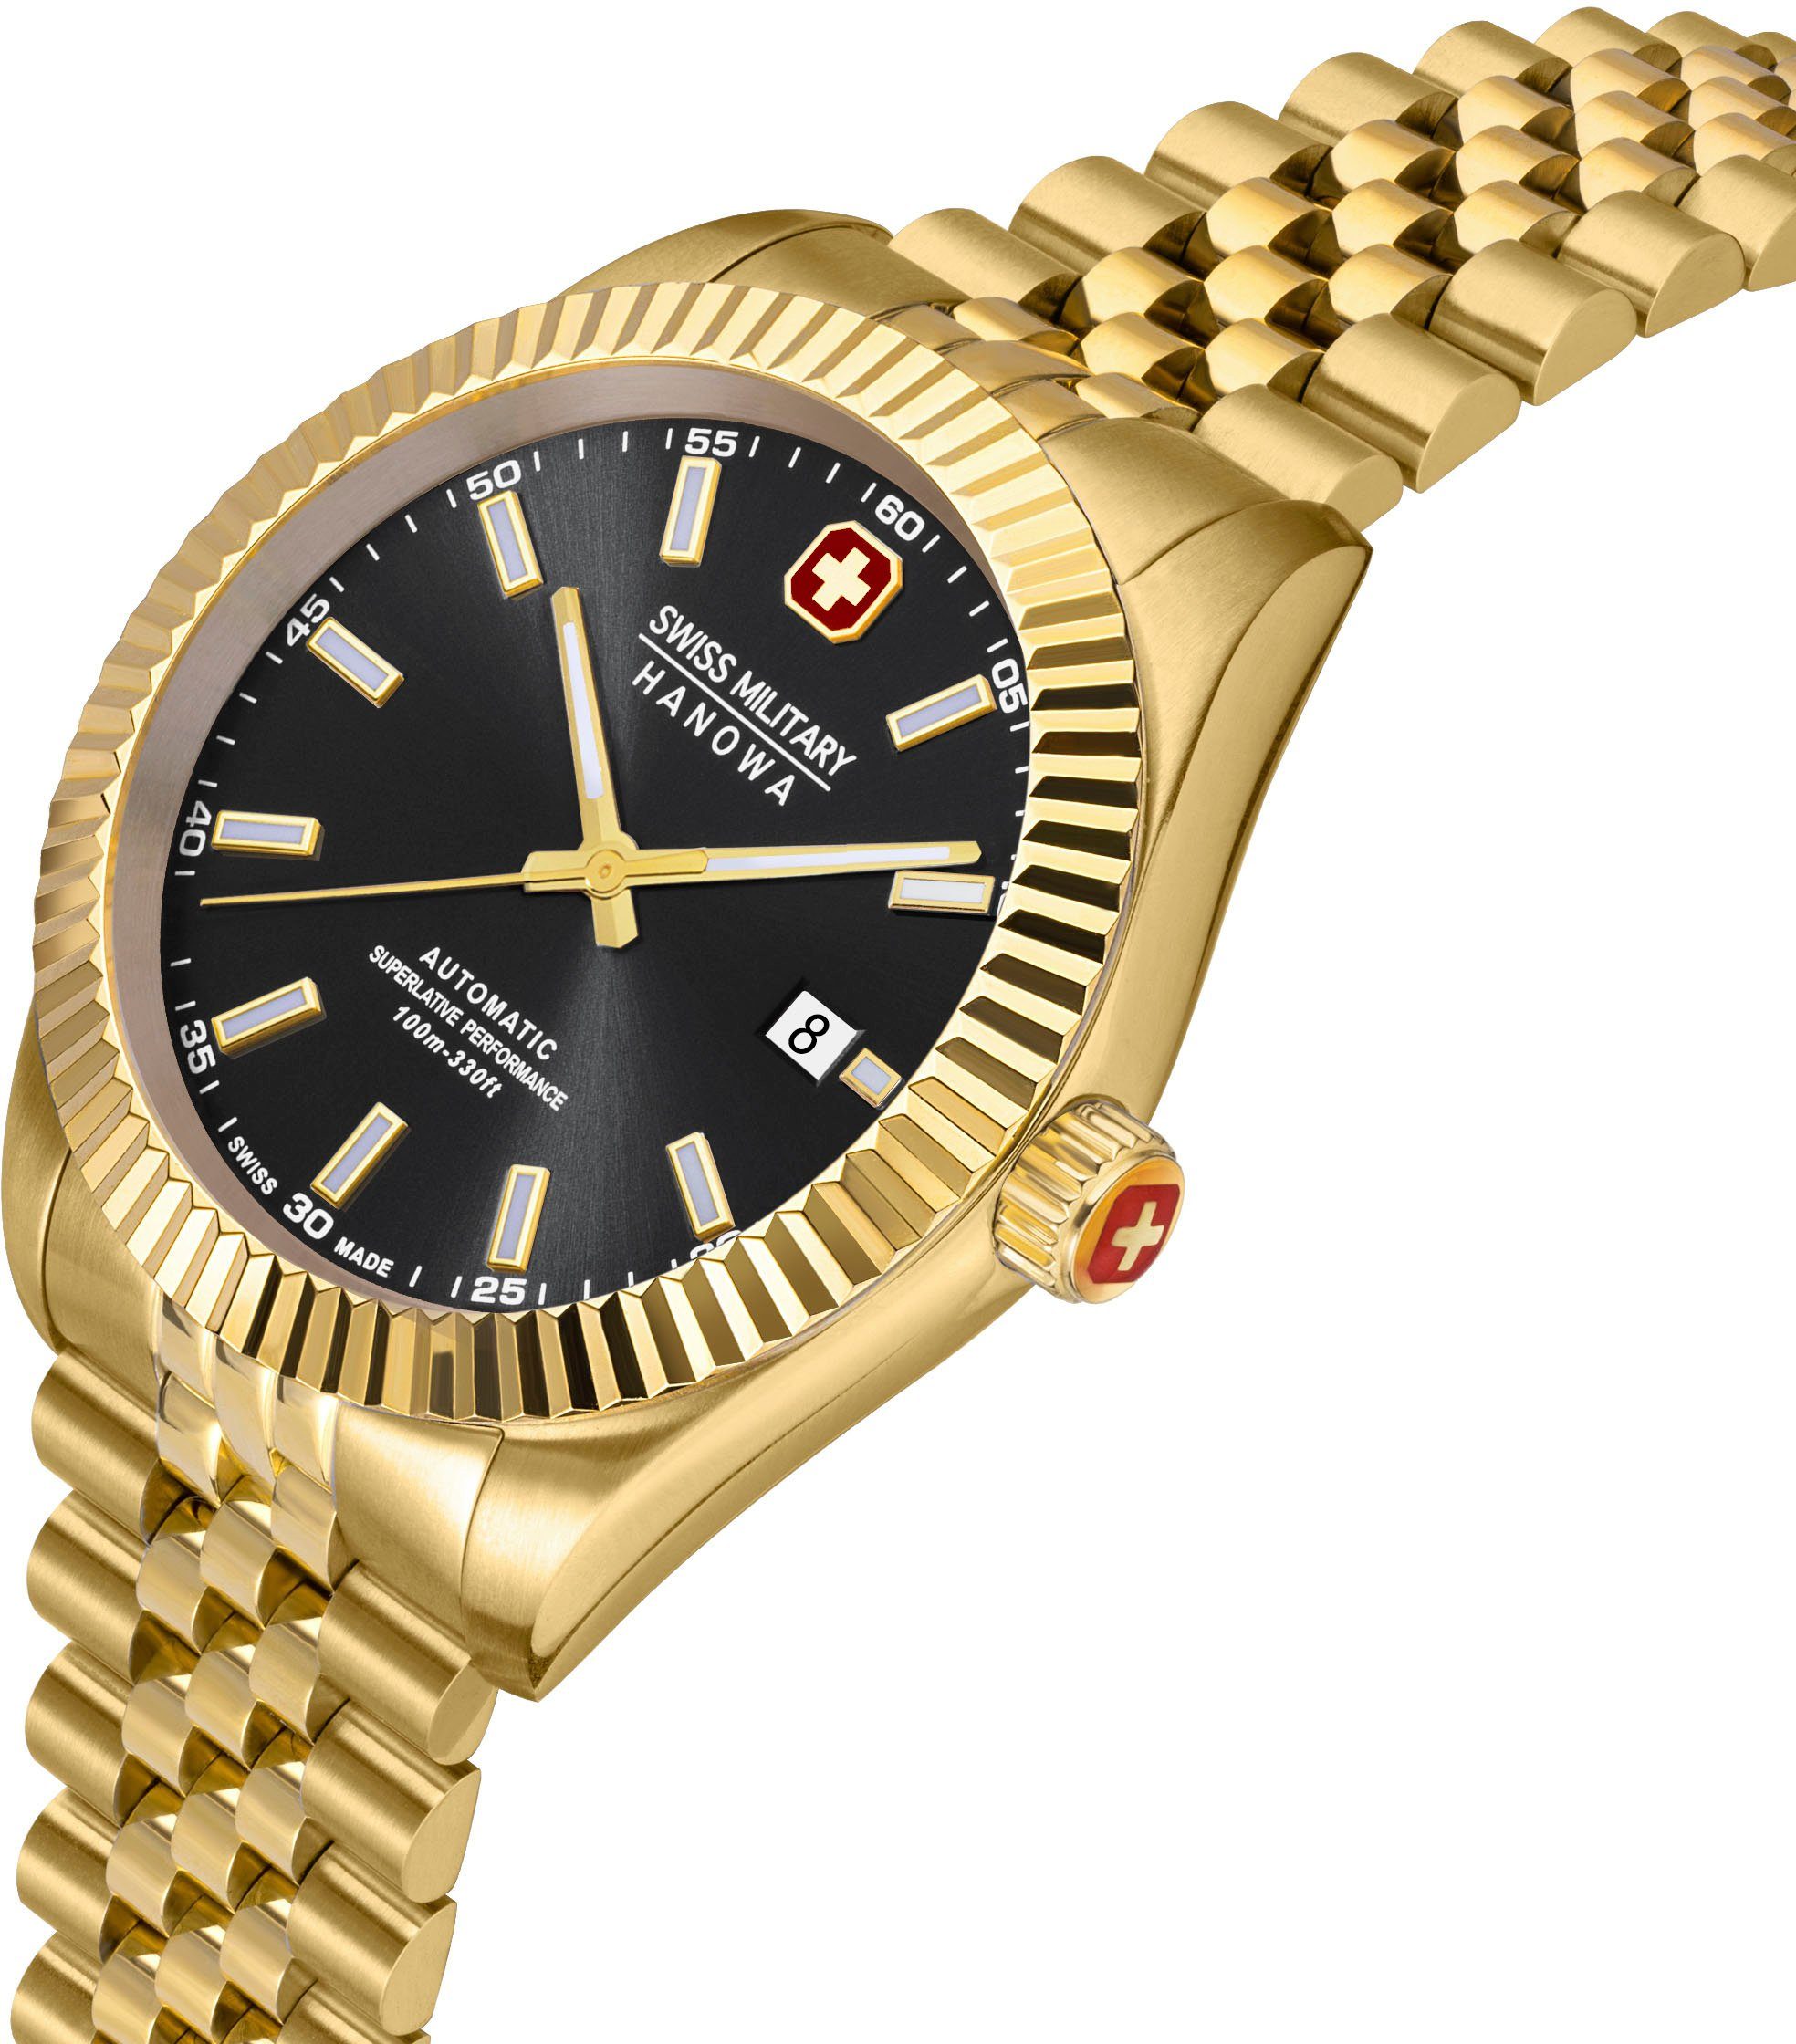 Gold SMWGL0002110 AUTOMATIC Uhr Schweizer Hanowa DILIGENTER, Military Swiss